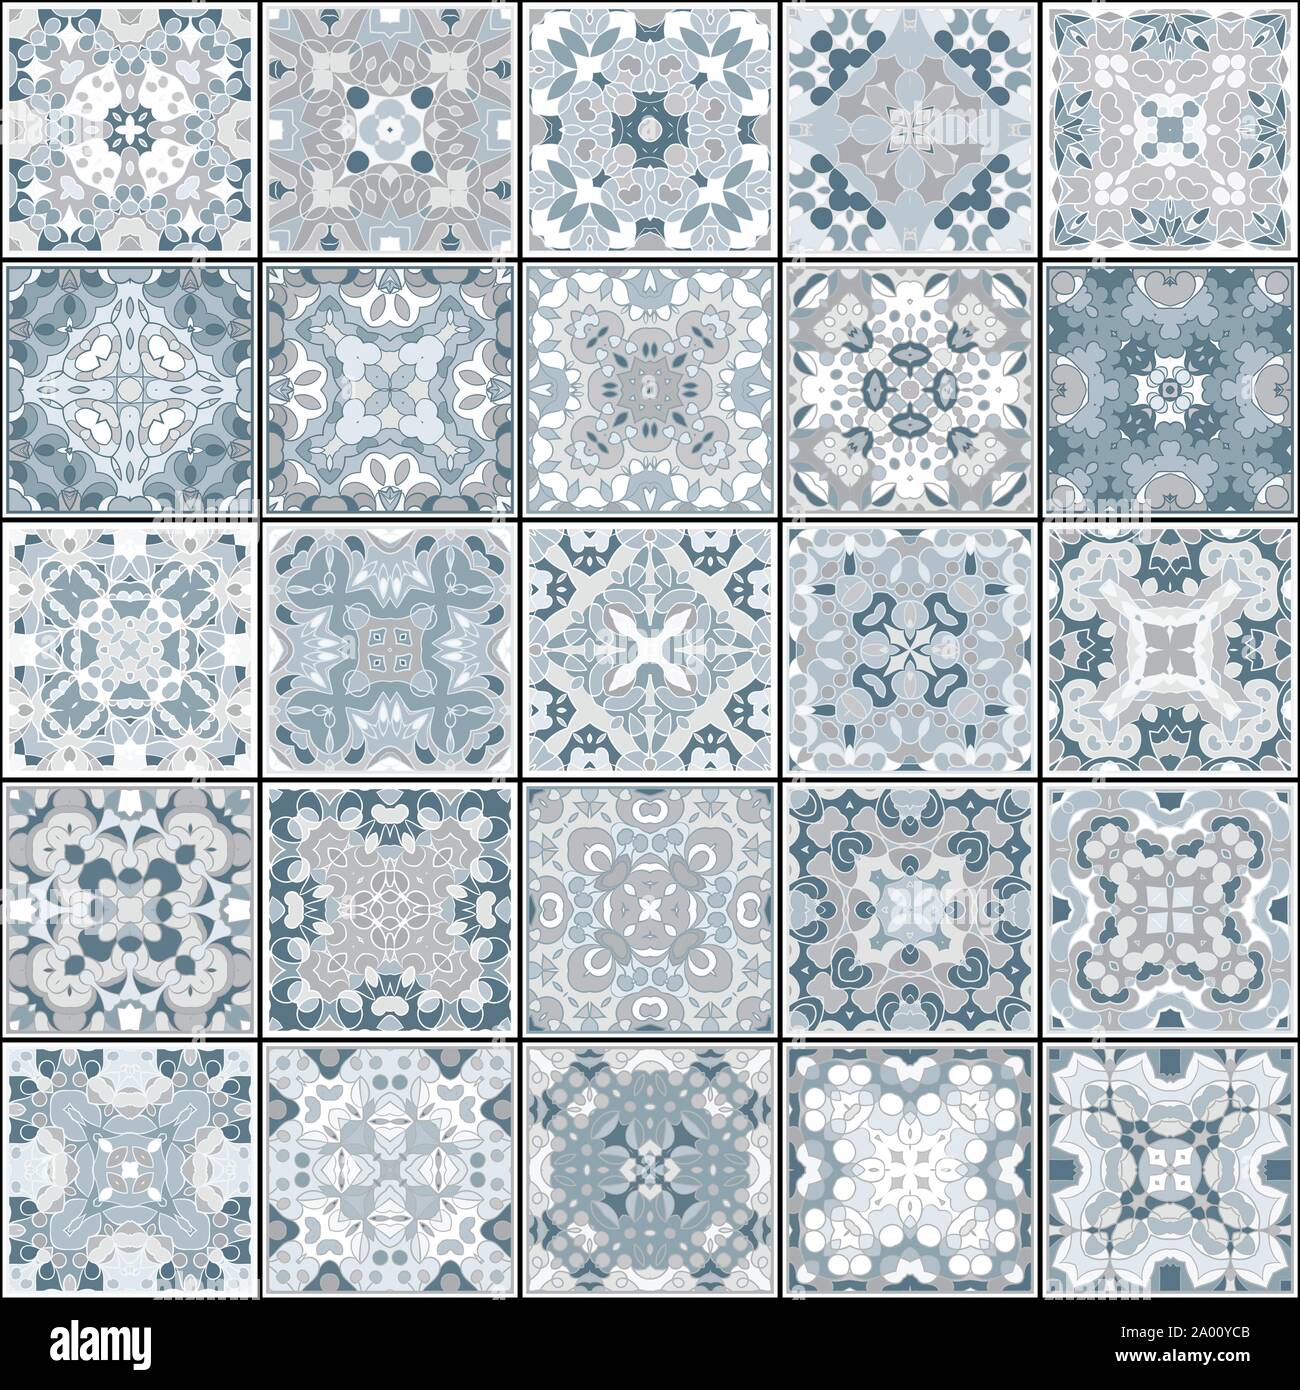 Eine Sammlung von Keramikfliesen in blauen Farben. Eine Reihe von quadratischen Muster im orientalischen Stil. Vector Illustration. Stock Vektor